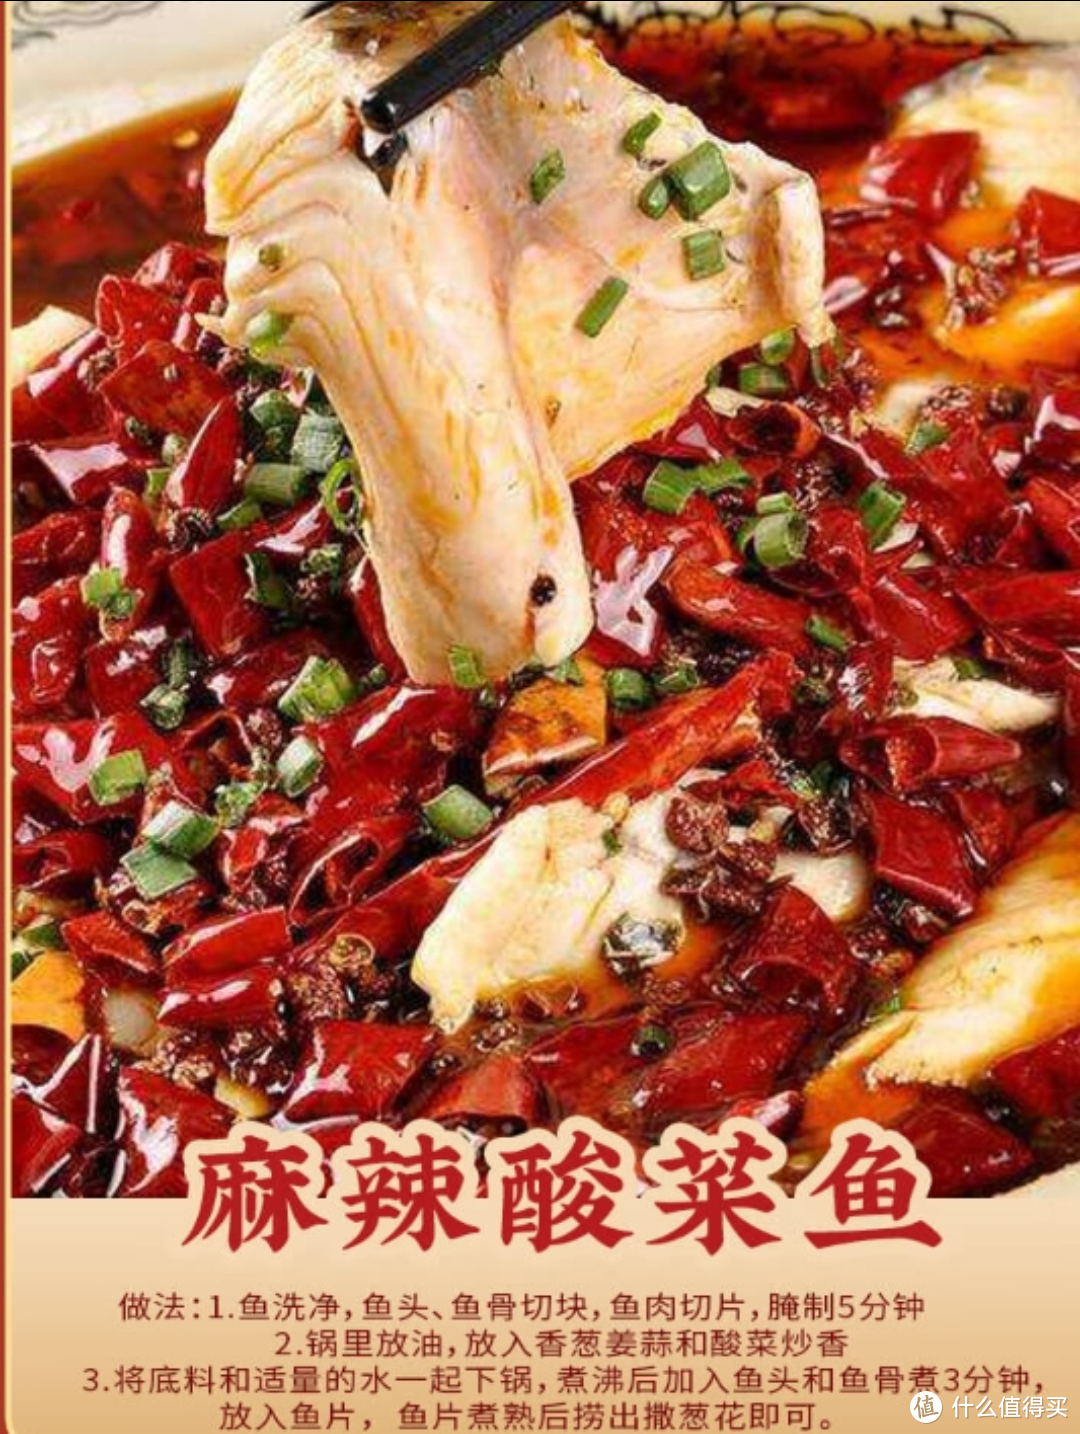 中华老字号 桥头 重庆老火锅底料：手工牛油调味料，勾起你的味蕾狂欢！